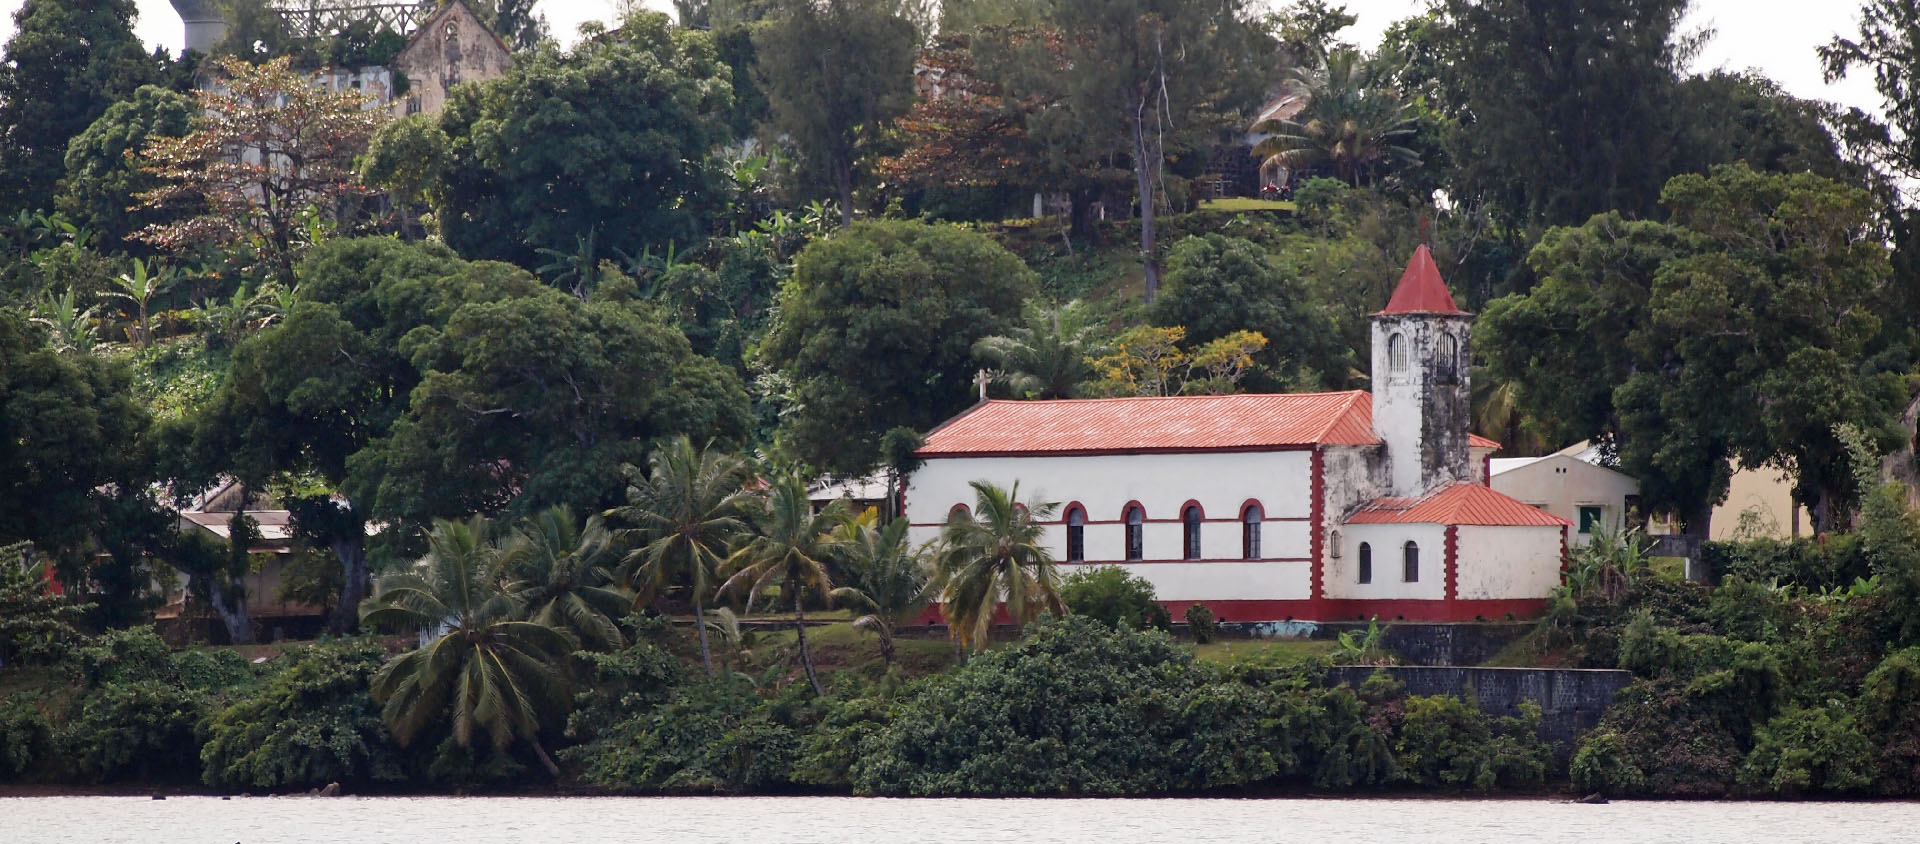 L'église d'Ambodifotatra a toujours accueilli les fidèles depuis sa construction, en 1847 | © Lemurbaby/Wikimedia commons/